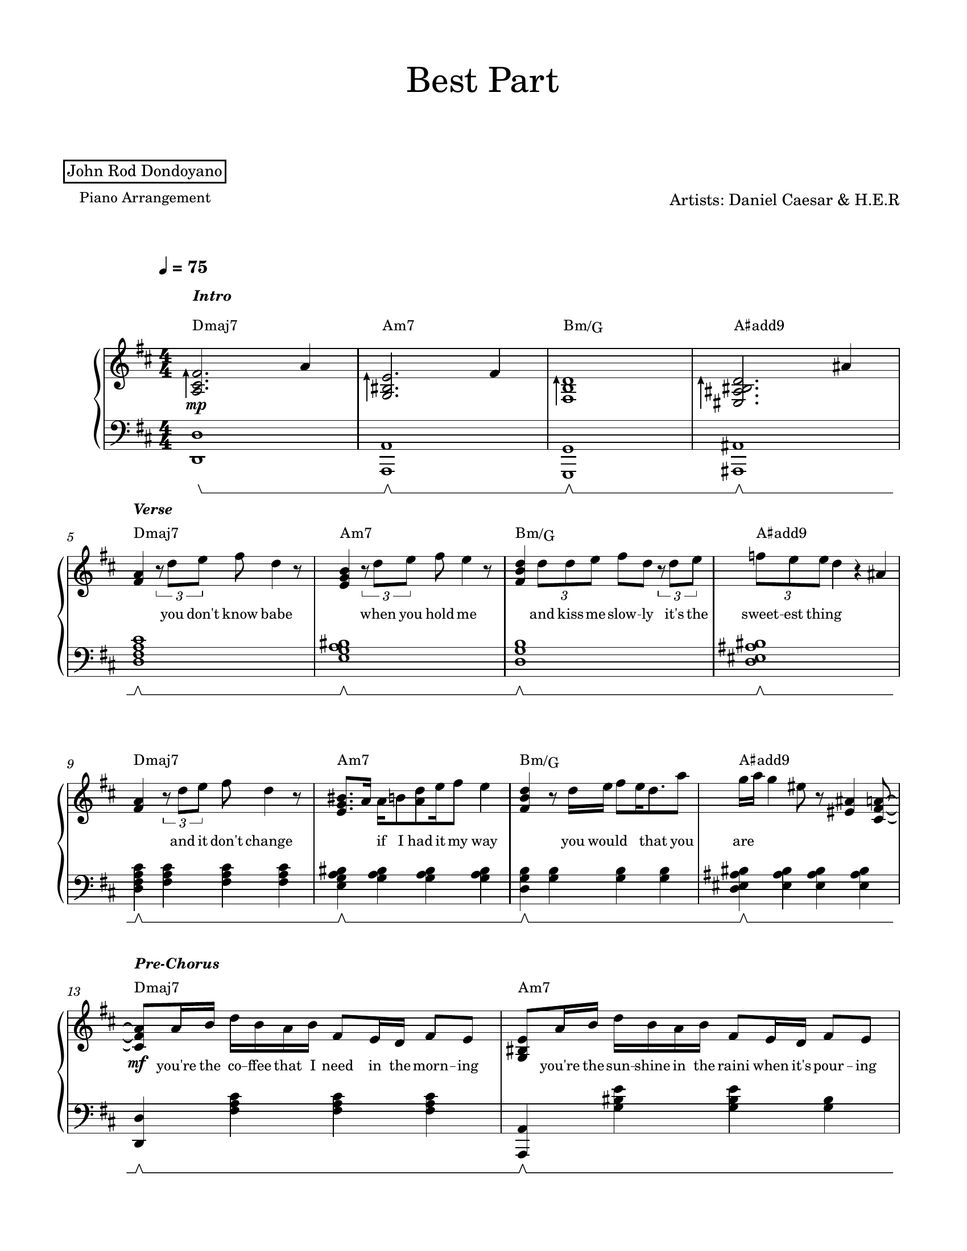 Daniel Caesar & H.E.R - Best Part (PIANO SHEET) by John Rod Dondoyano